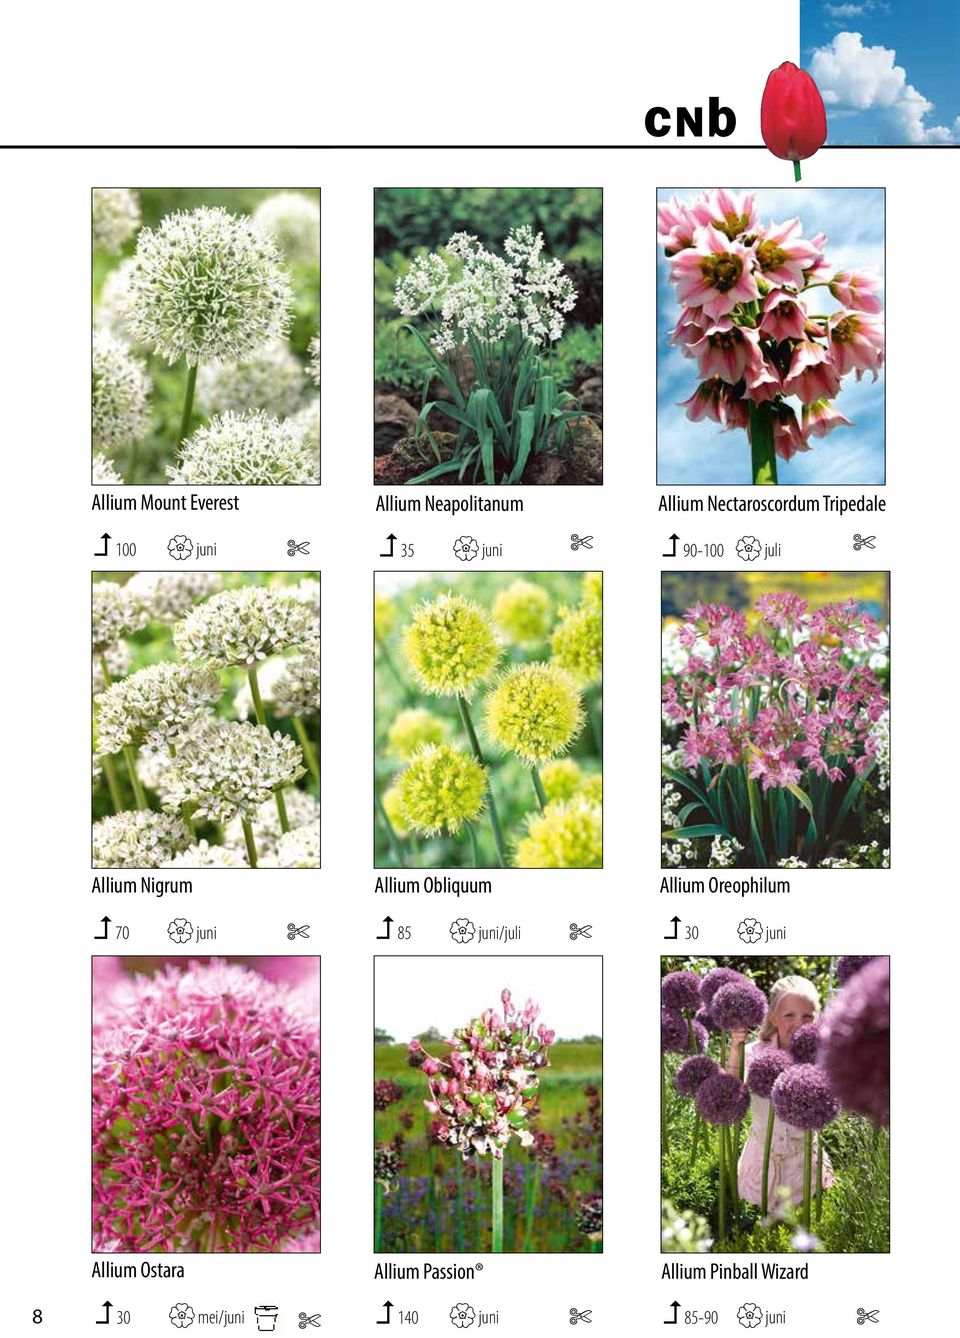 foto s kunt u bij juni 35 opvragen. Van sommige cultivars juni 90-100 heeft ook promotiemateriaal.